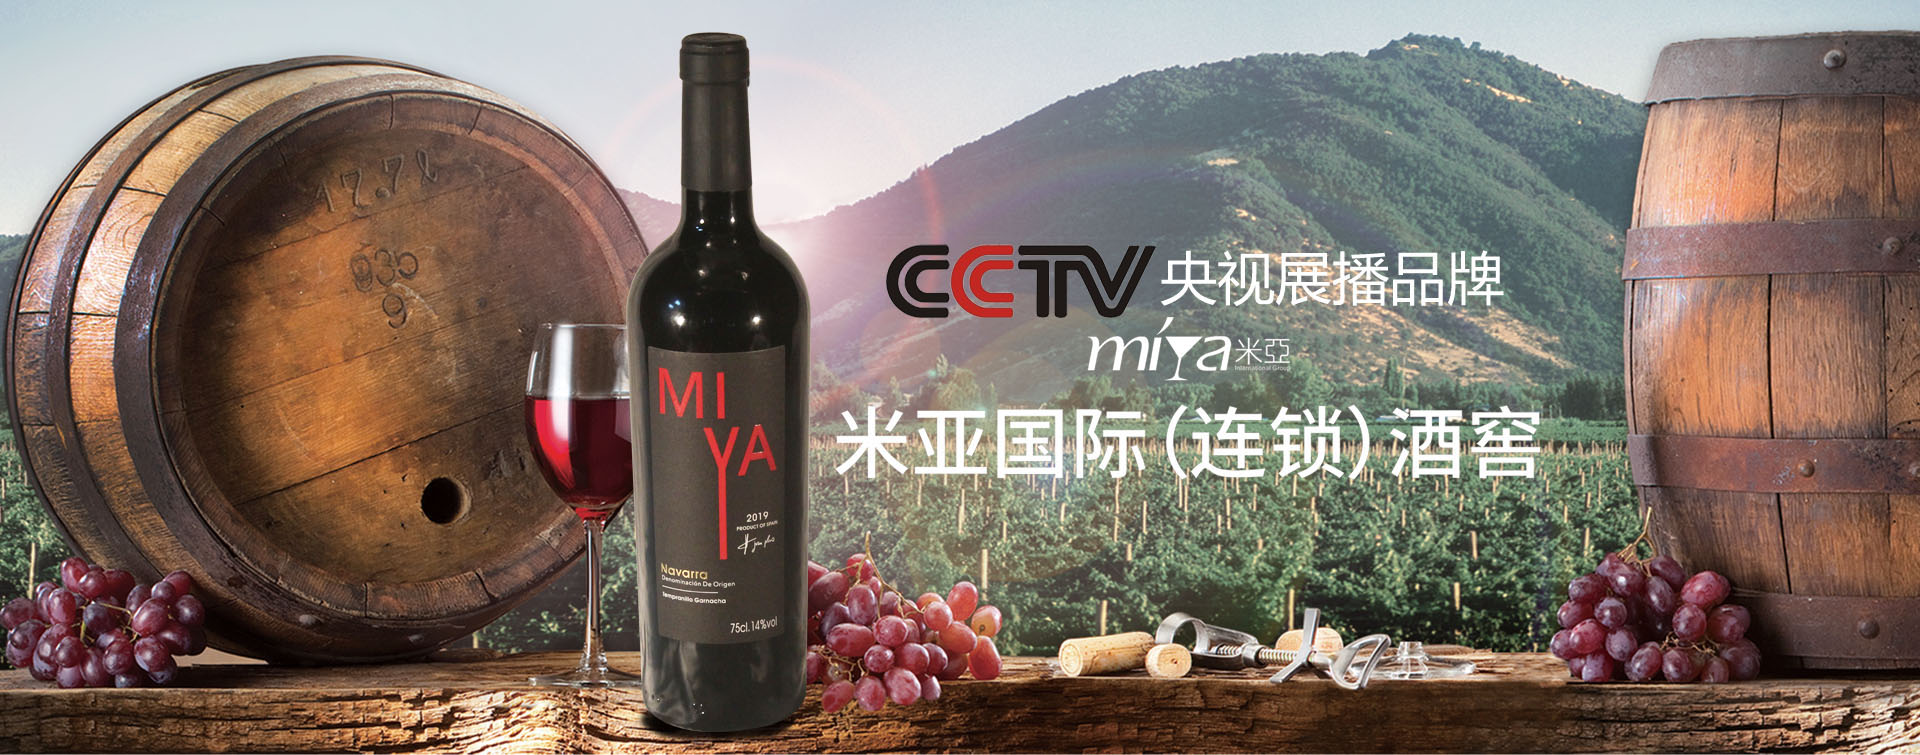 CCTV腾博会官网宣传片